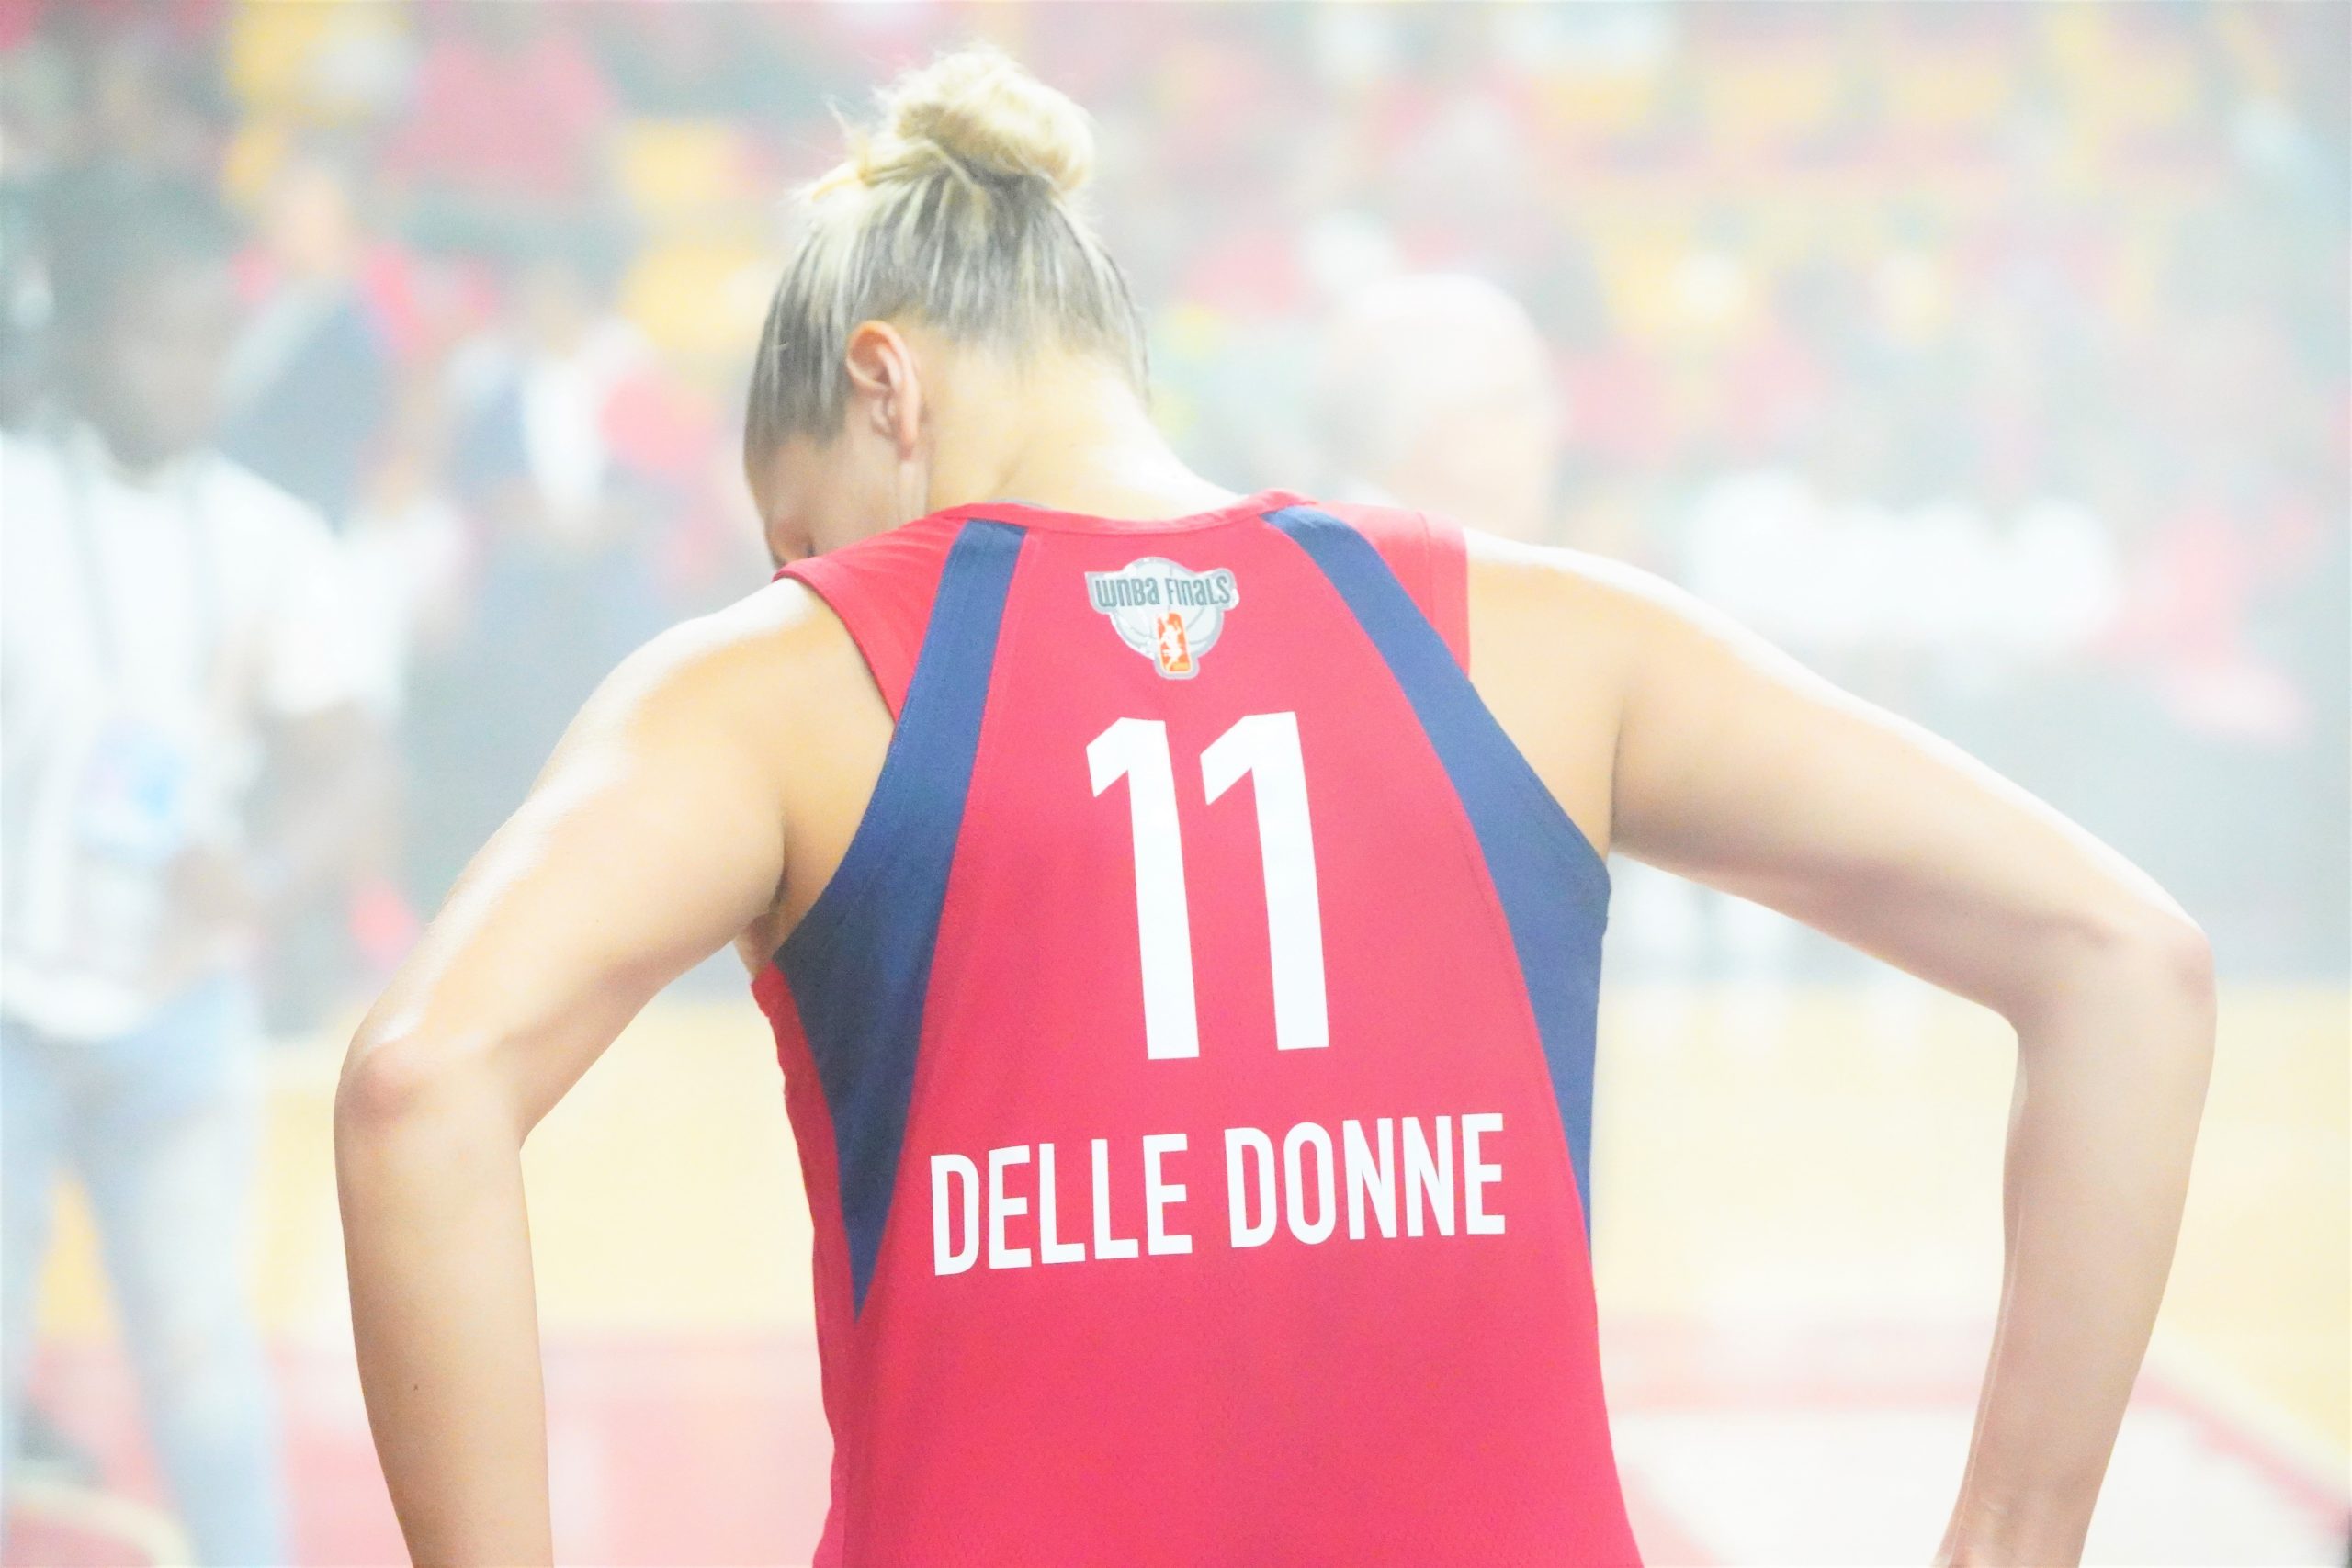 Elena Delle Donne back hands on hips